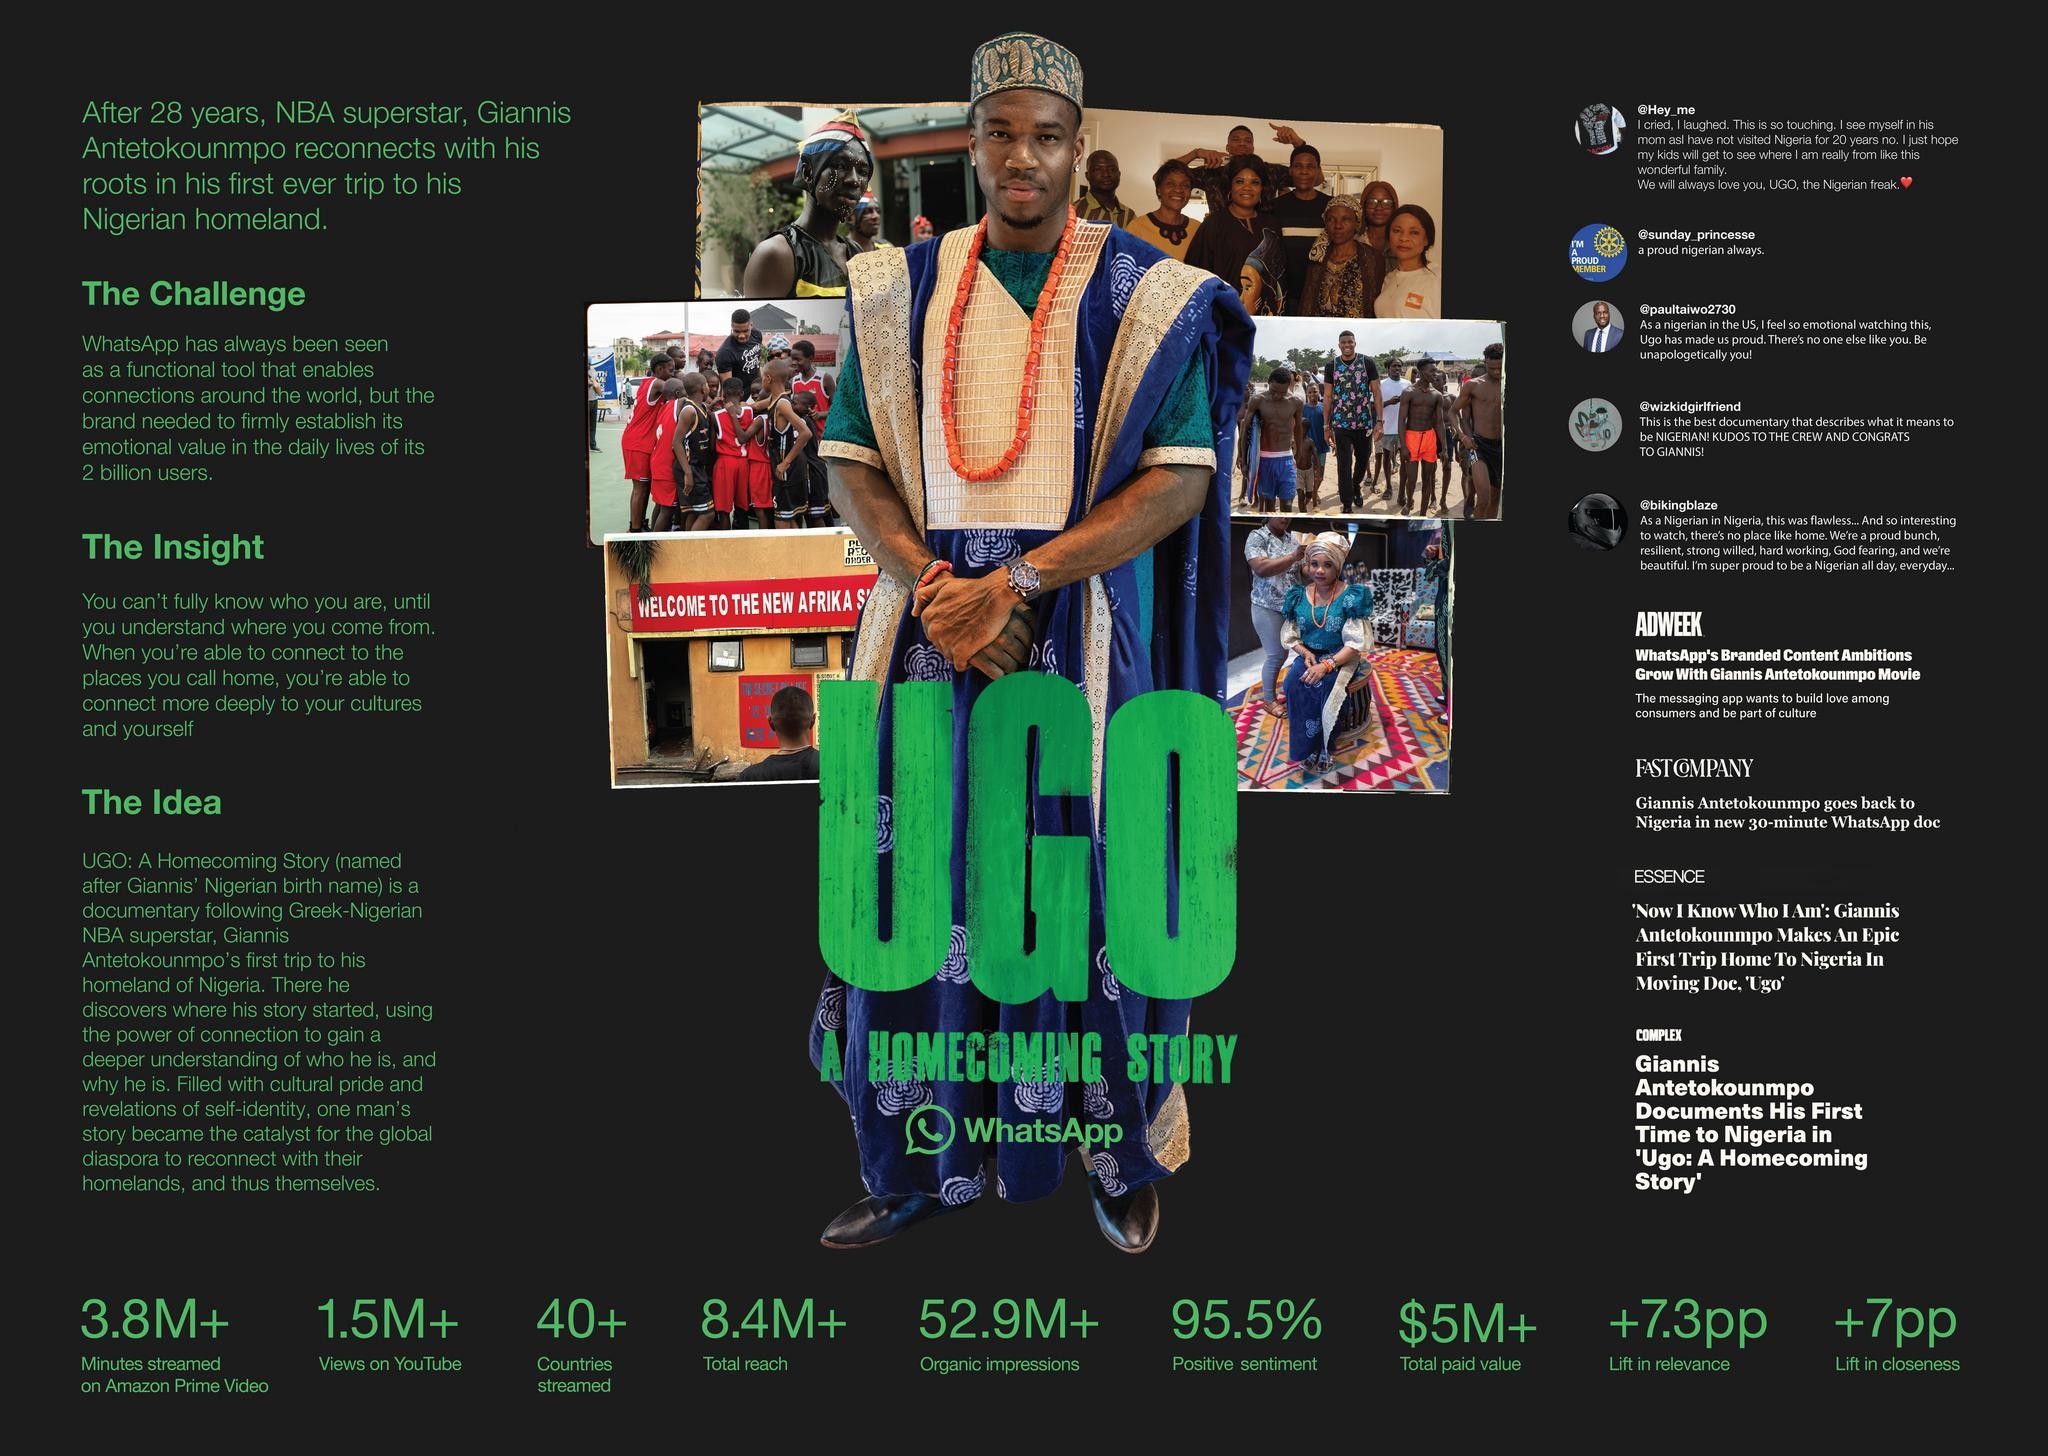 UGO: A Homecoming Story